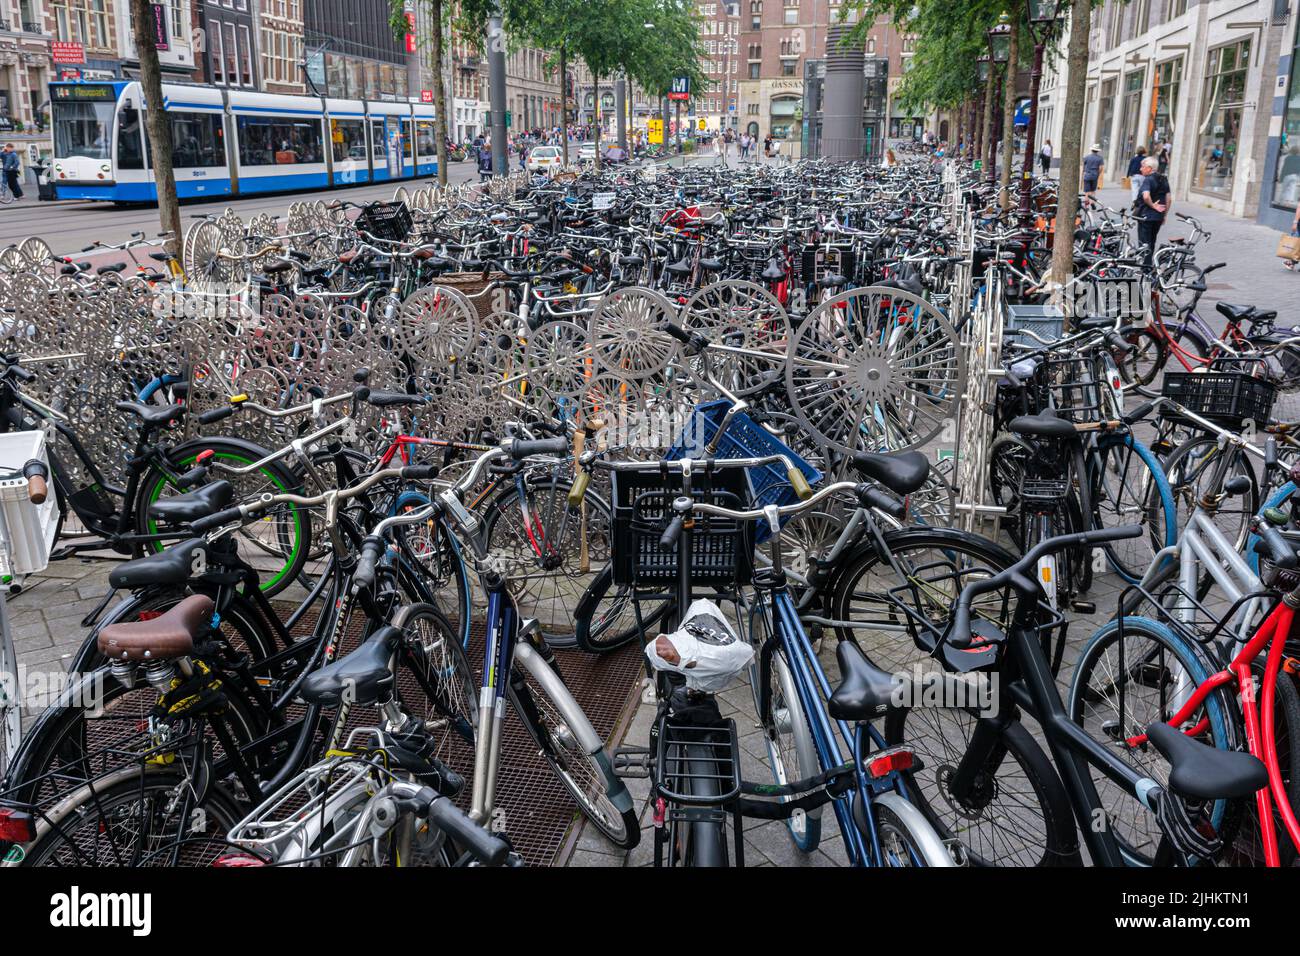 Amsterdam, Netherlands - 21 June 2022: Hundreds of bikes in bike racks Stock Photo